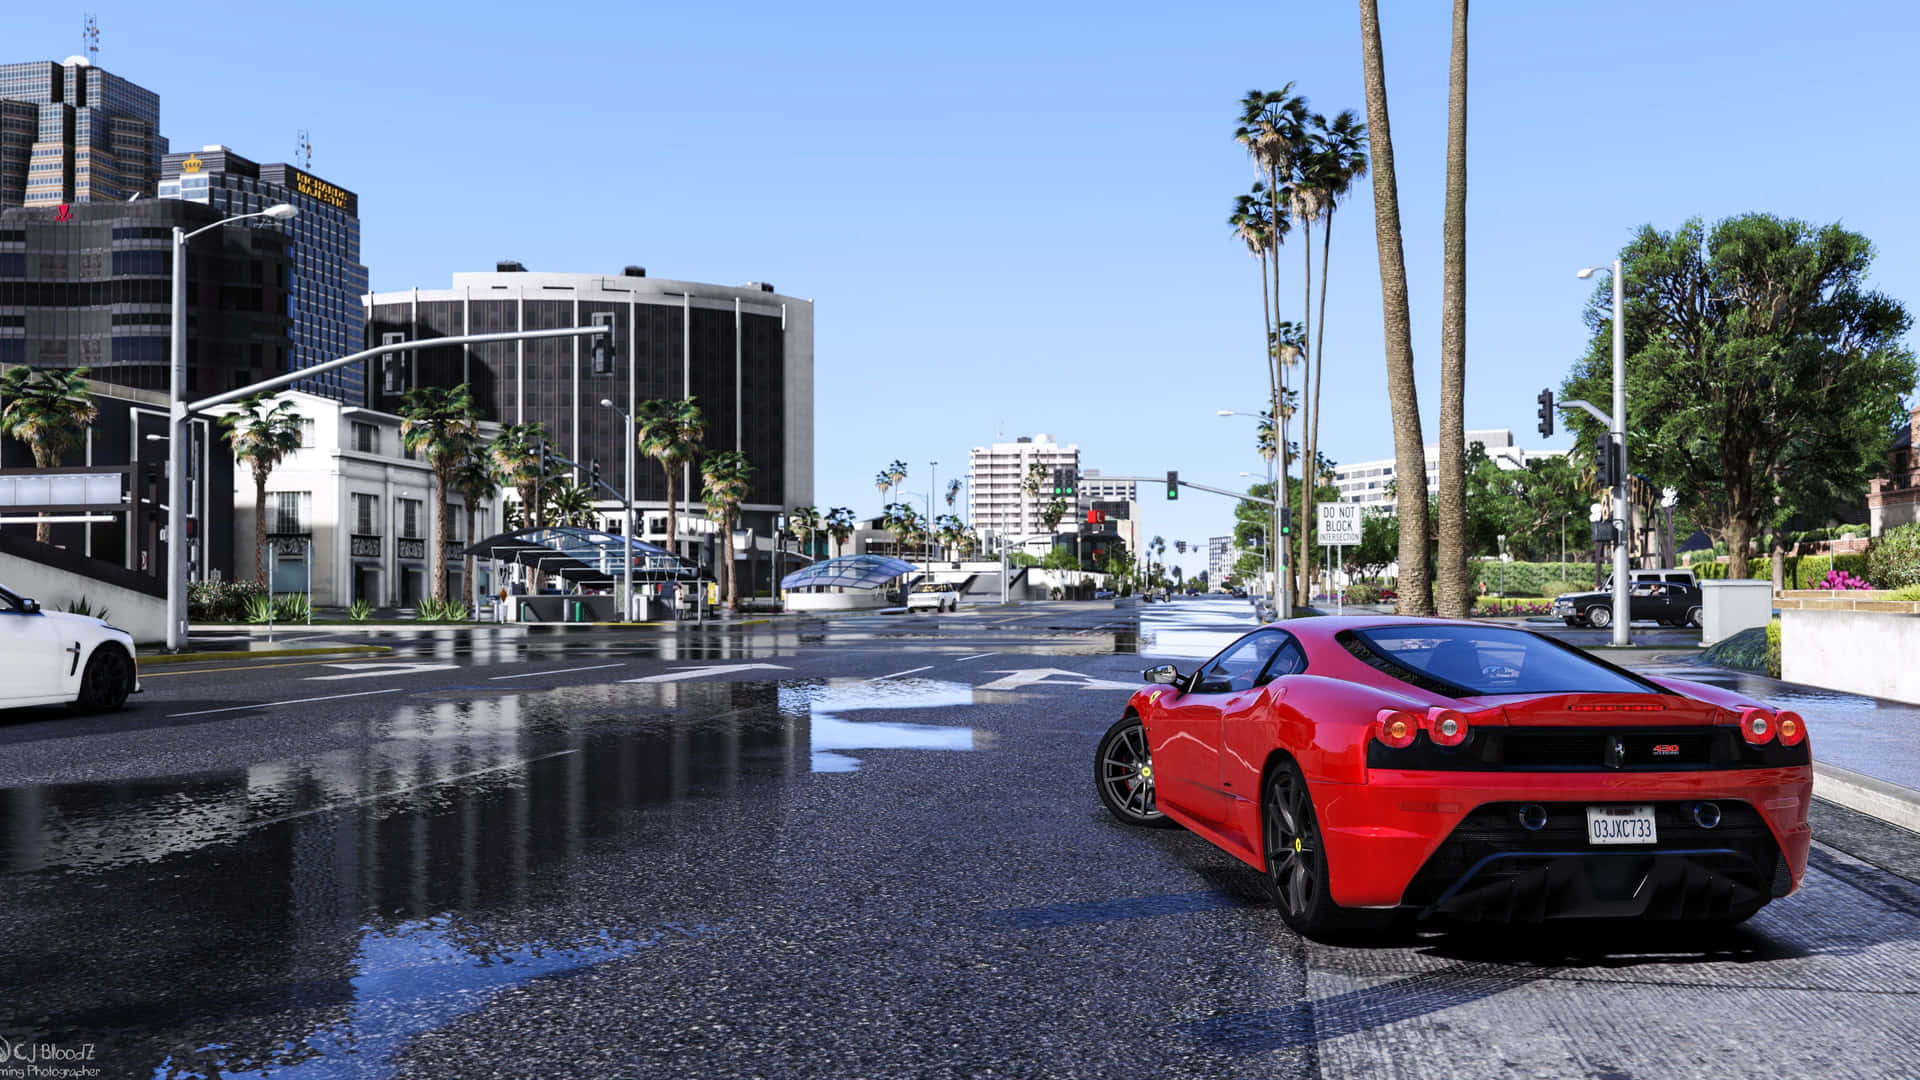 Einrotes Sportwagen Steht Auf Einer Straße In Grand Theft Auto Parkiert. Wallpaper